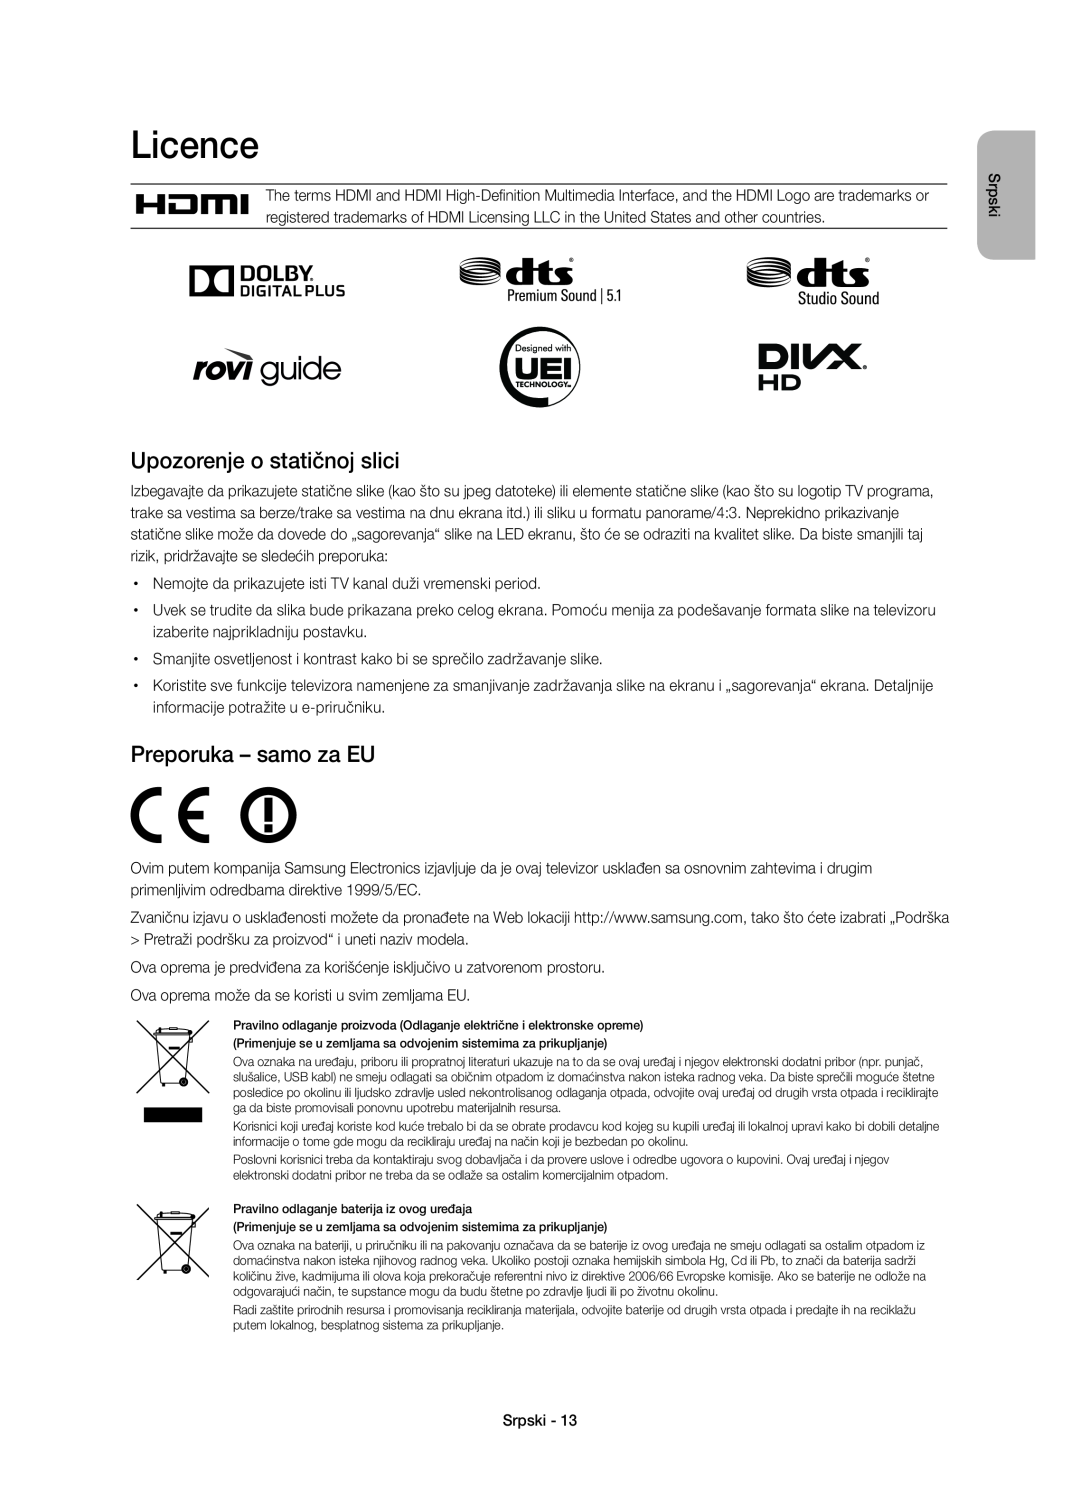 Samsung UE40H6640SLXXN, UE55H6700SLXXH, UE48H6670SLXXH manual Upozorenje o statičnoj slici, Licence, Preporuka - samo za EU 